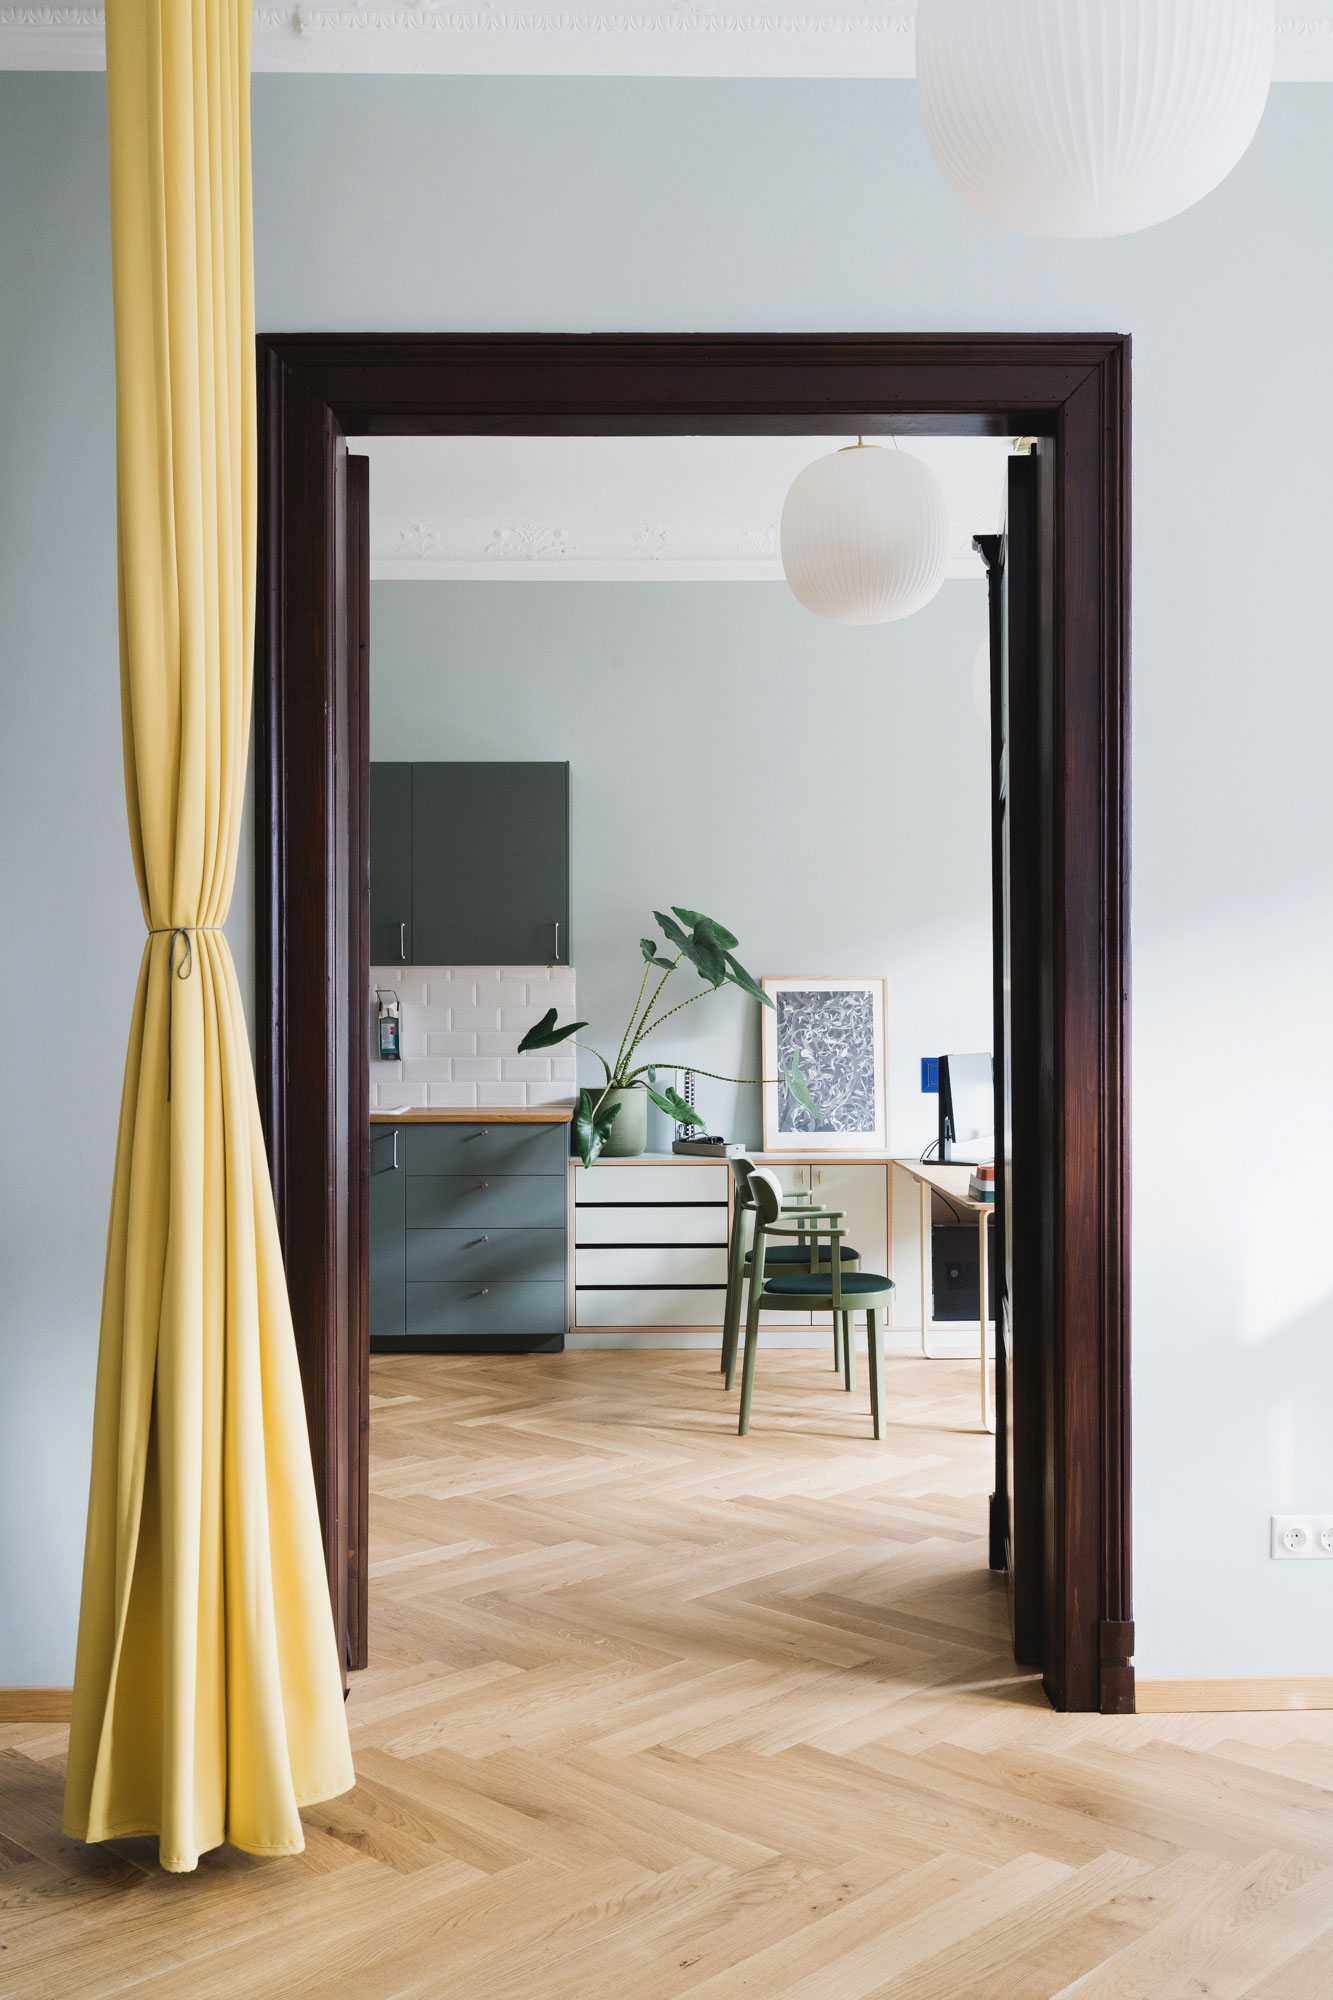 Praxis mit Regalen und Möbeln renoviert mit skandinavischen Marken wie Muuto, Bolia, Carl Hansen oder Hübsch Interior